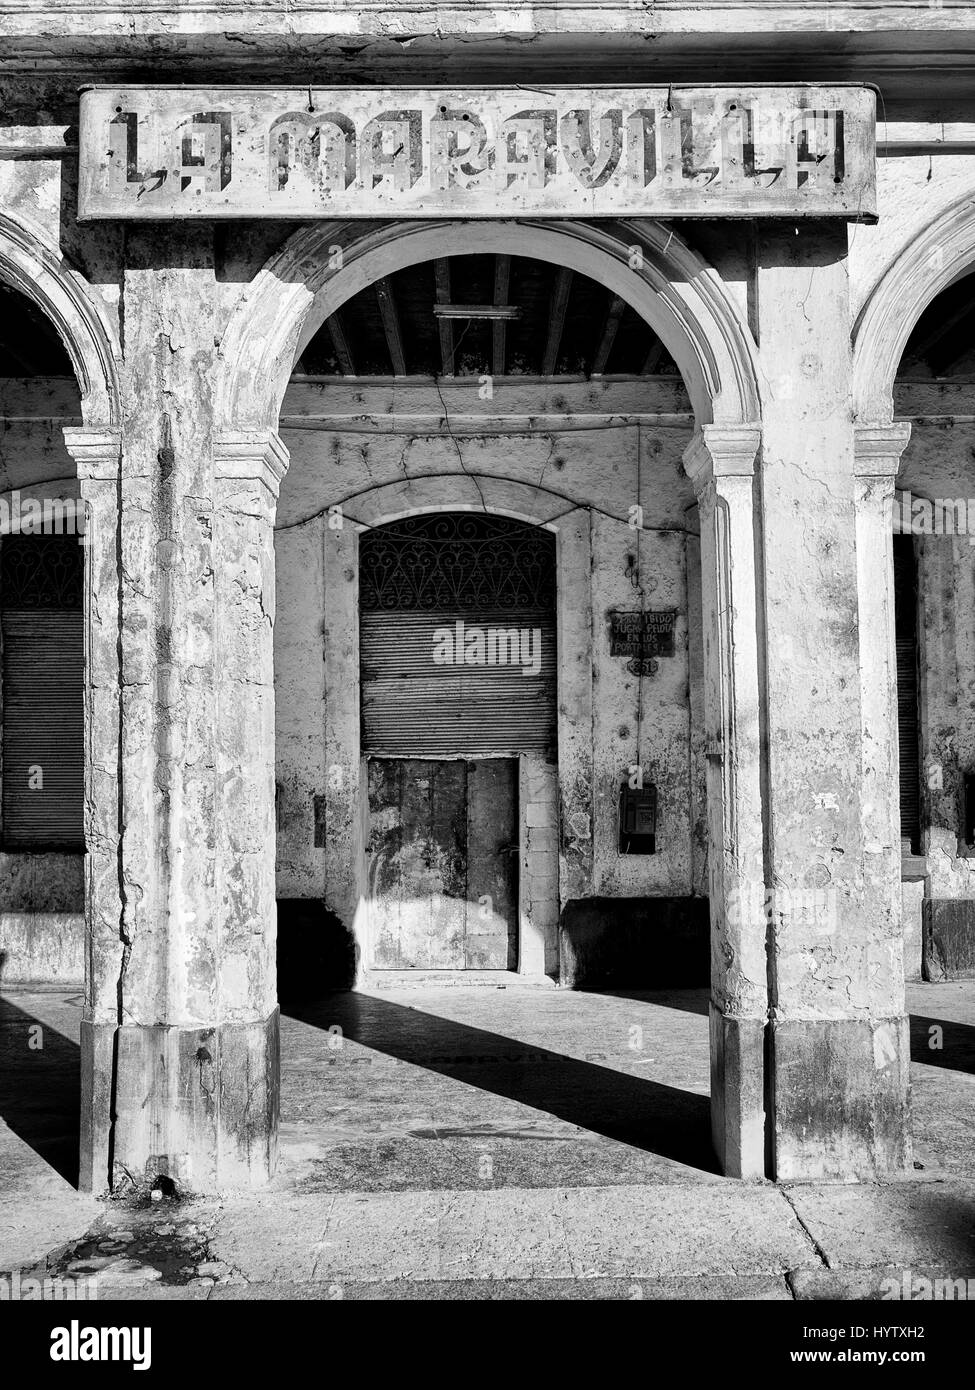 The abandoned hotel 'la maravilla' in Havana, Cuba Stock Photo